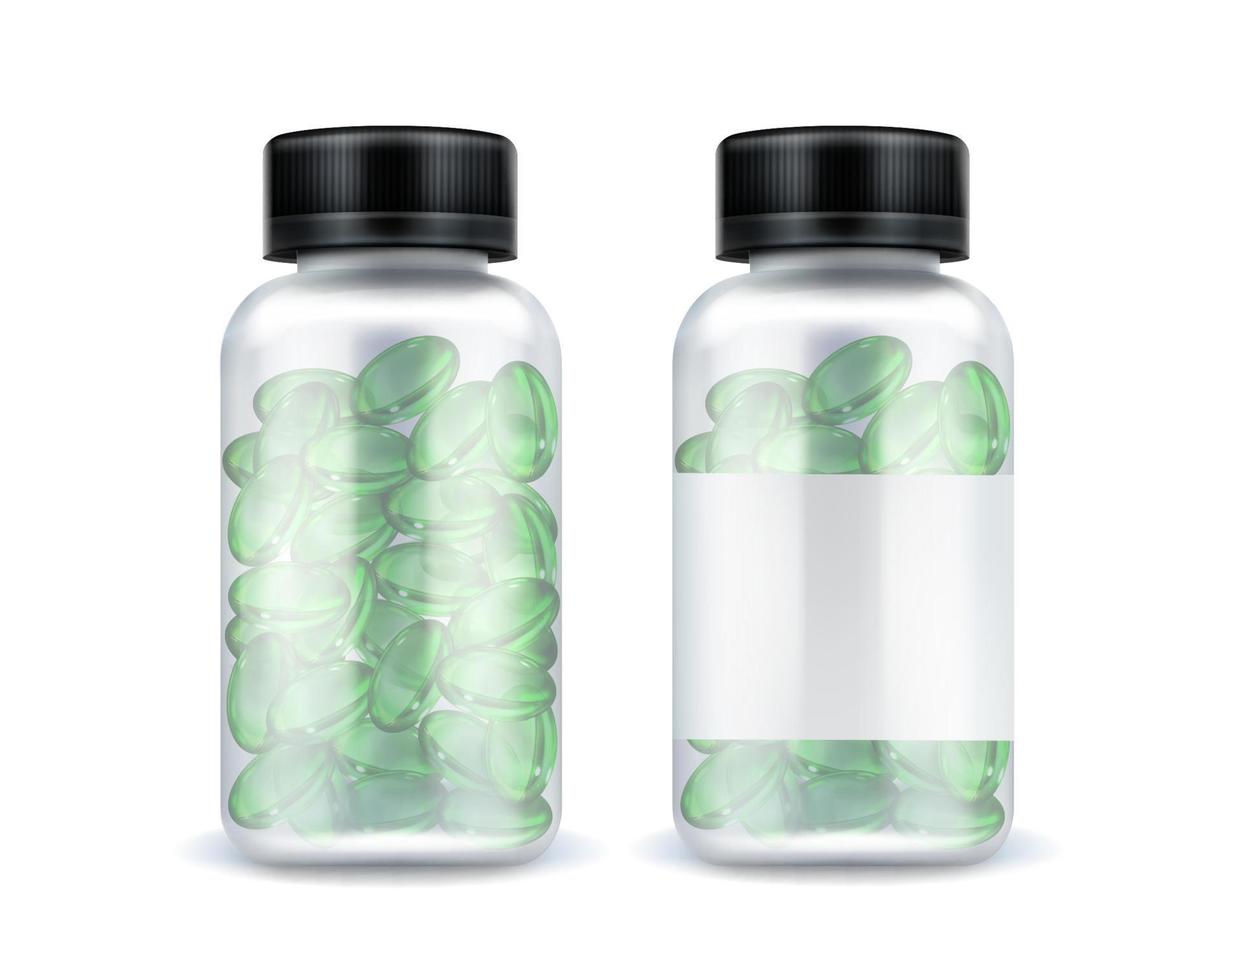 piller flaska mockup, grön medicin oval kapslar vektor